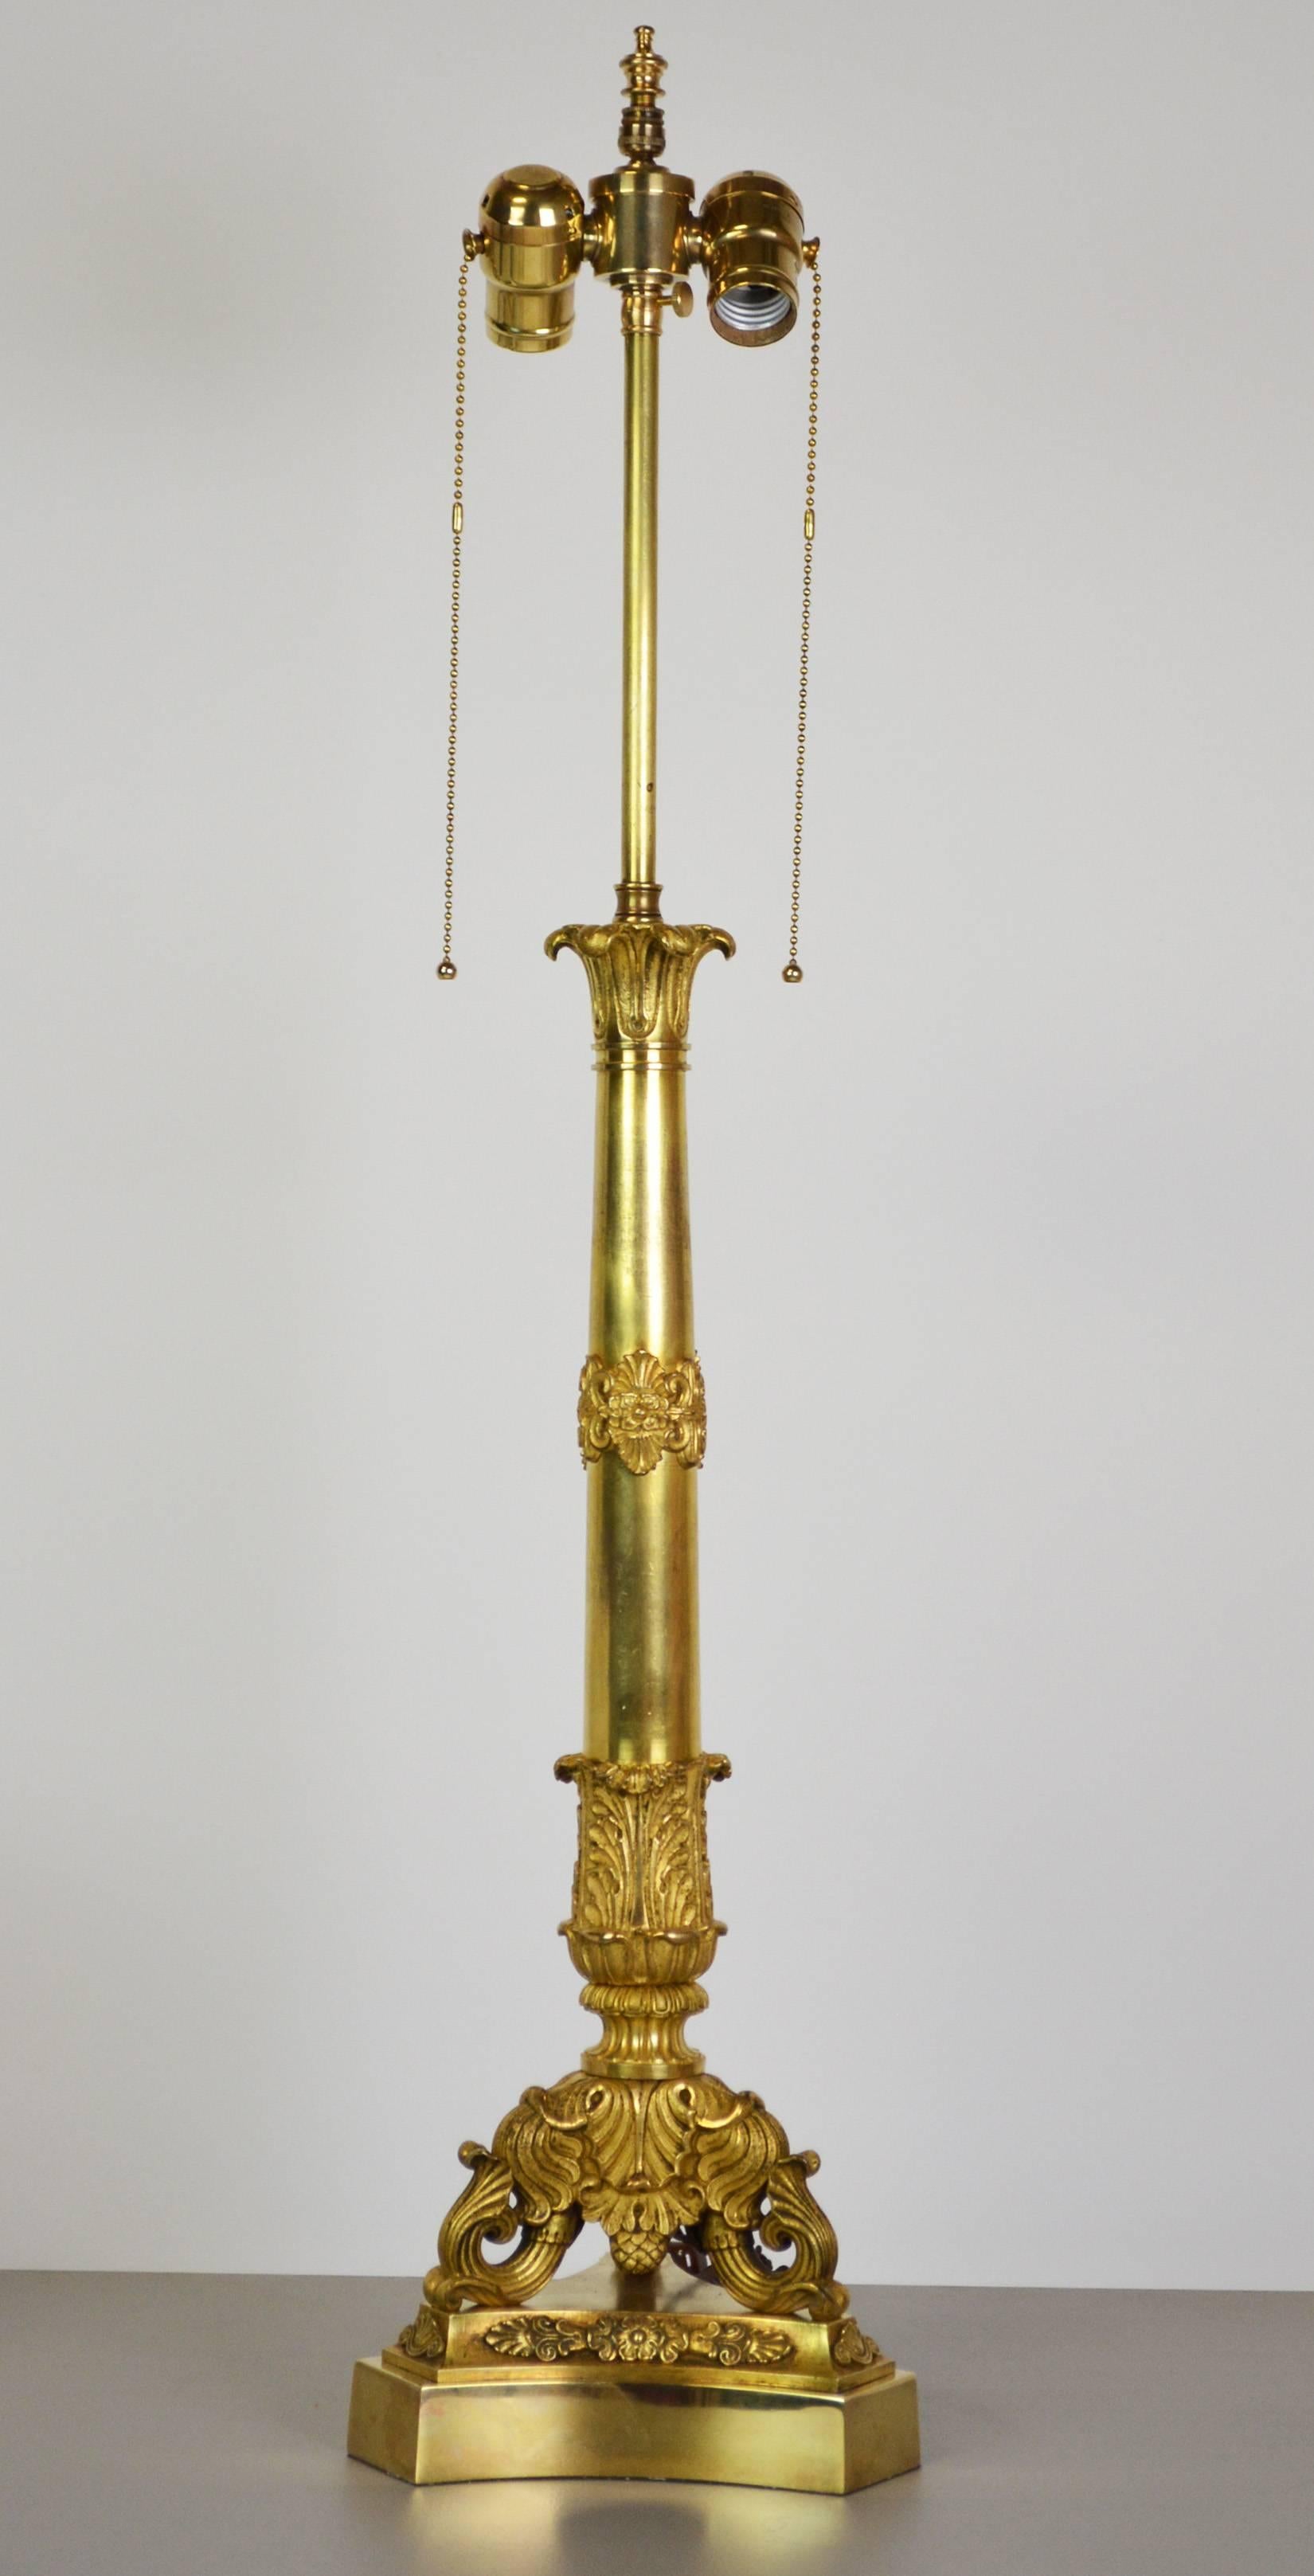 Lampe en bronze doré de grande qualité, datant du XIXe siècle, avec des détails néoclassiques finement ciselés. La base tripode supporte une tige effilée avec des montures décoratives, surmontée d'un sommet en forme de 